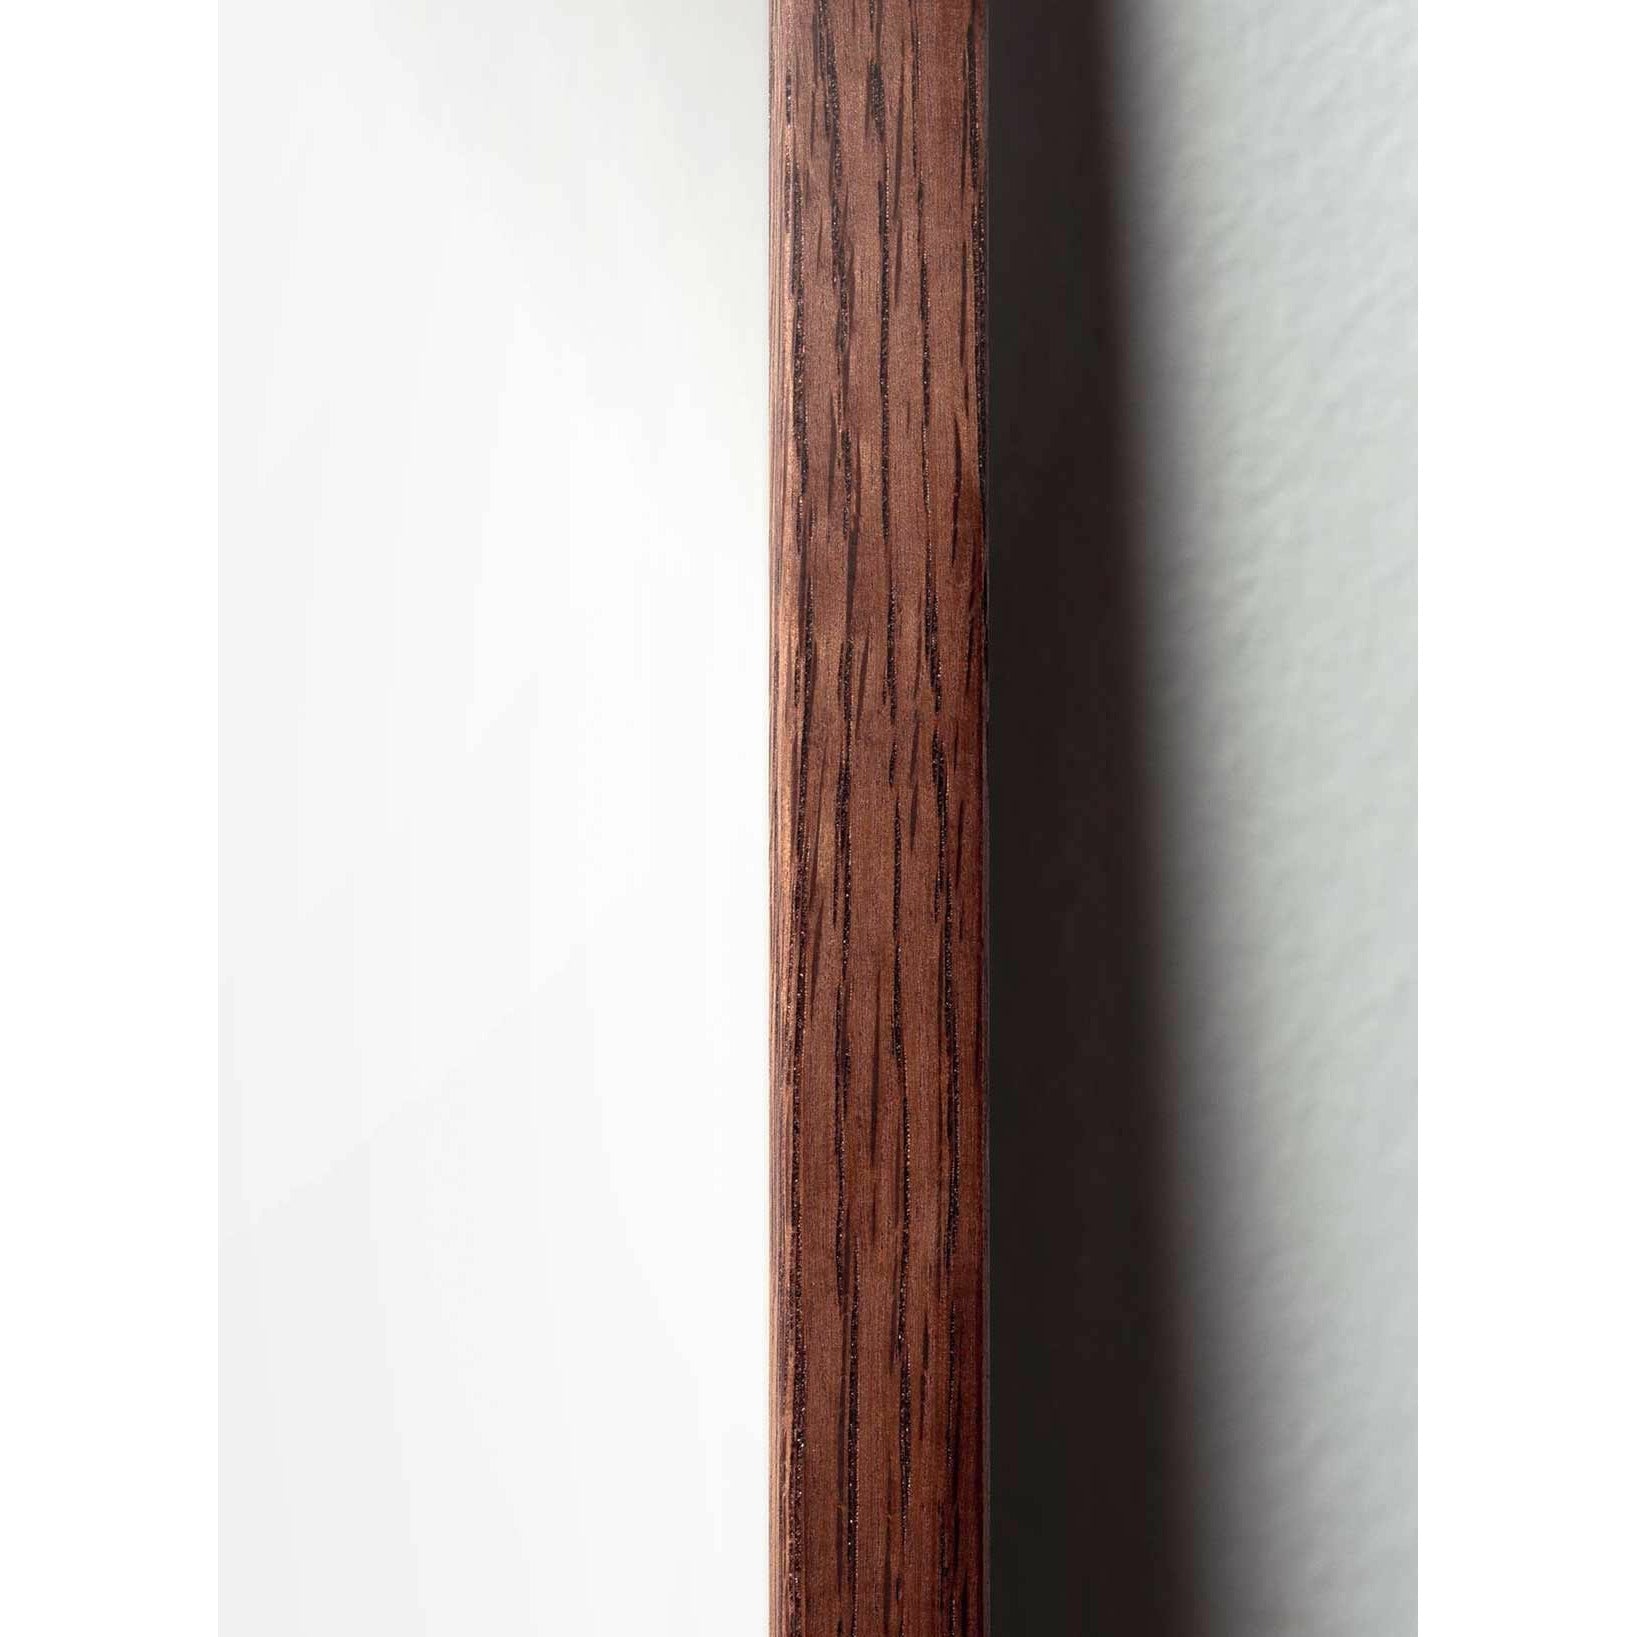 Póster de diseño de diseño de oso de peluche de creación, marco hecho de madera oscura de 70 x100 cm, gris